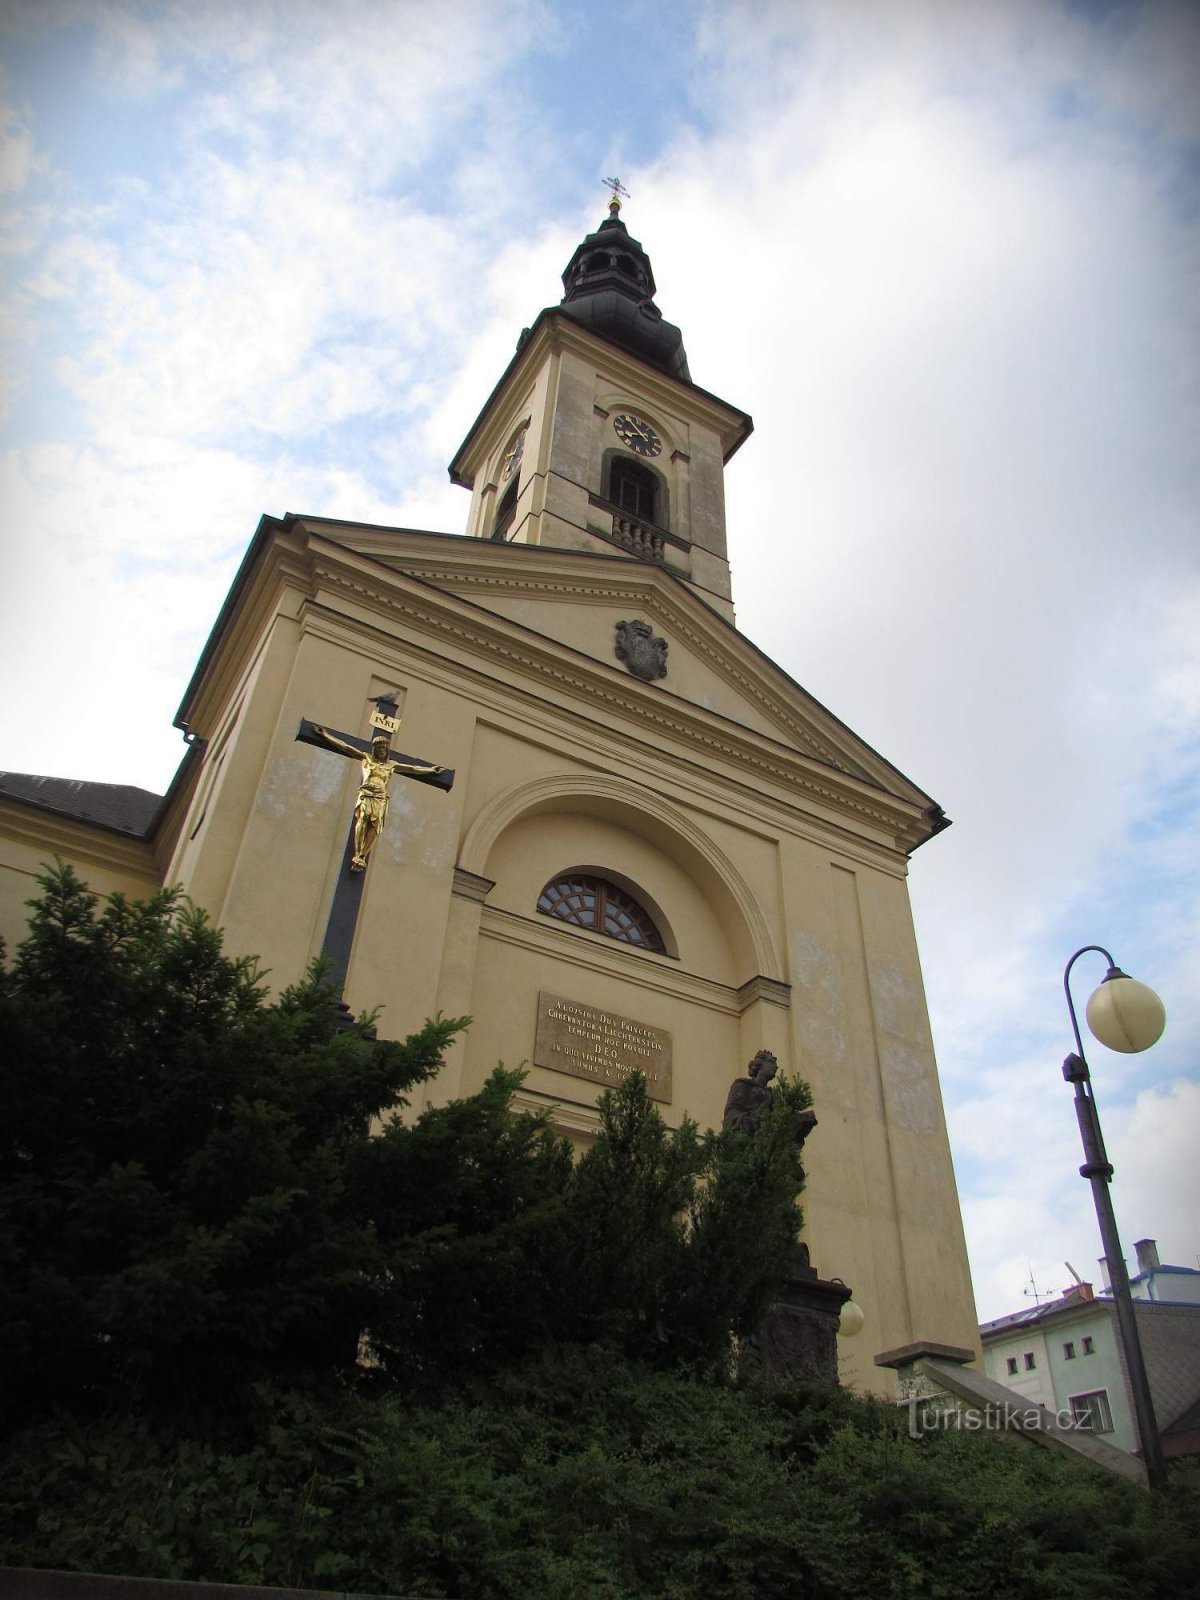 Česká Třebová - Dean's Church of St. James